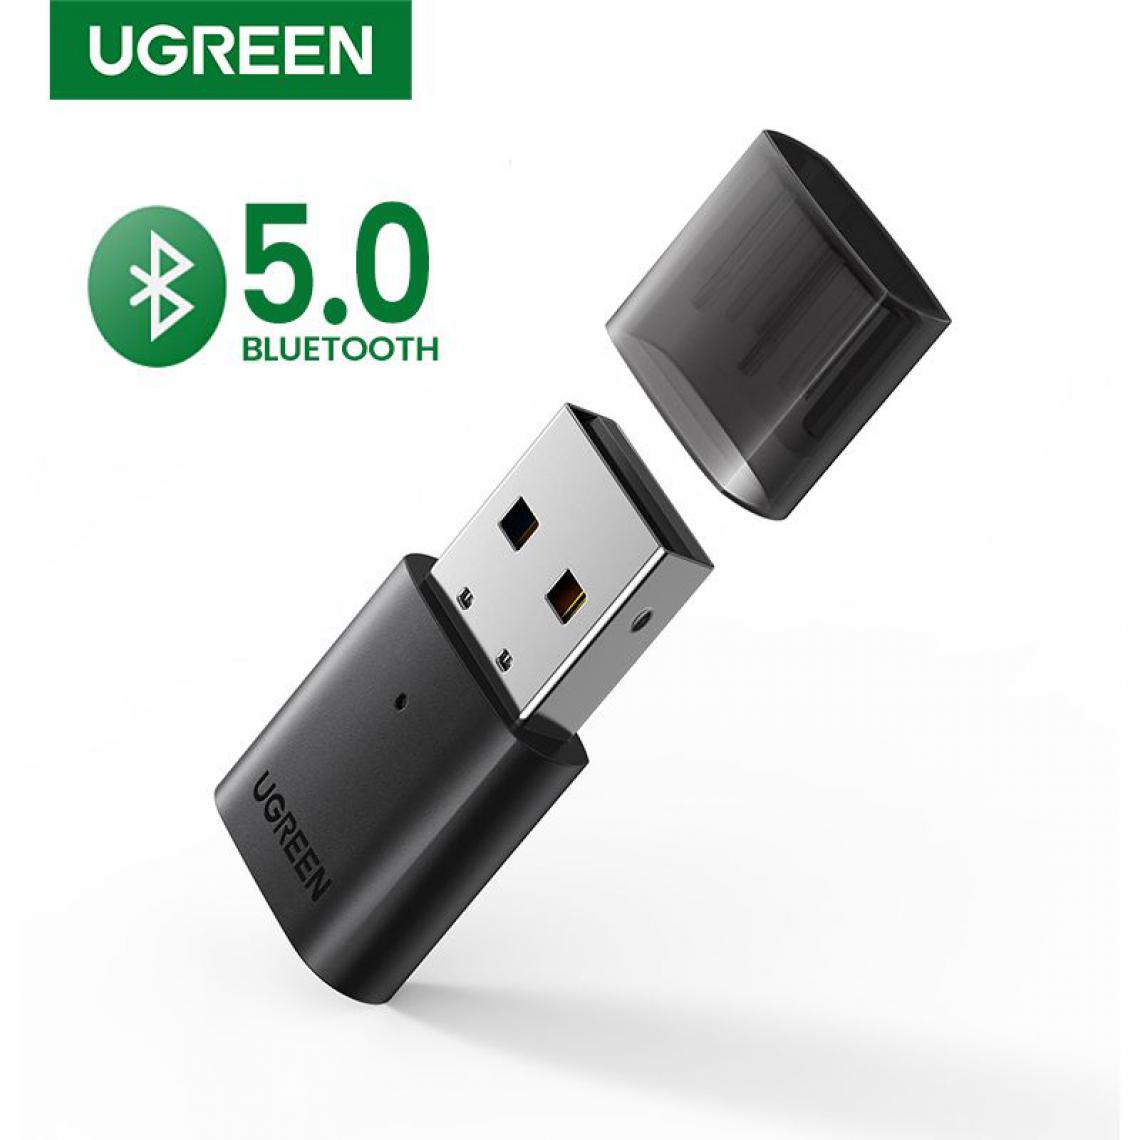 Generic -  Adaptateur USB Bluetooth 5.0, Dongle pour PC, haut-parleur, souris, musique, récepteur Audio, transmetteur aptX - Noir  - Clé USB Wifi